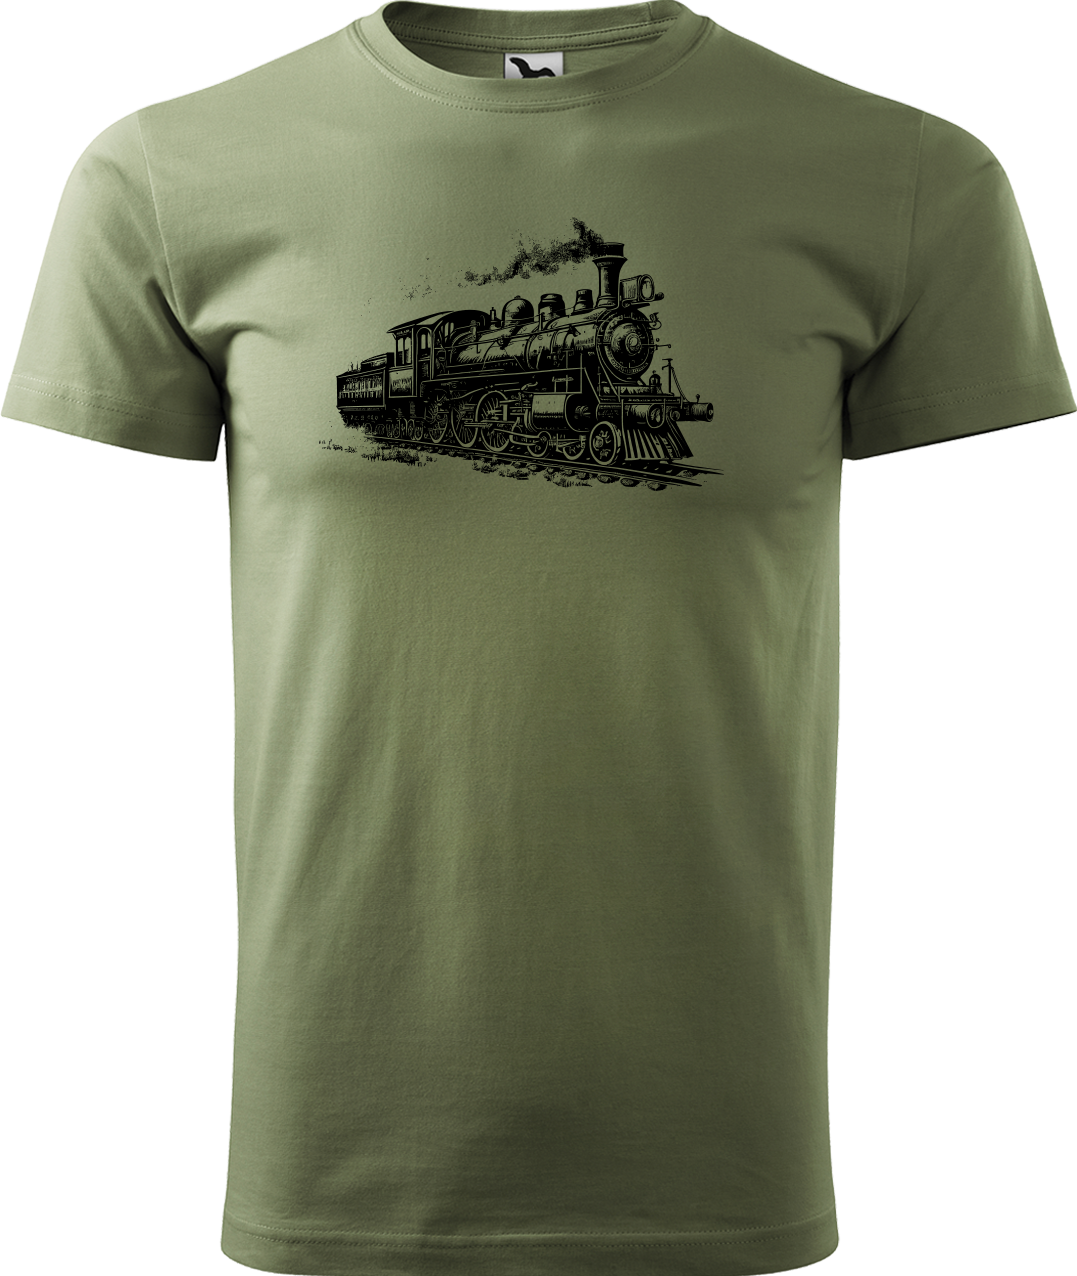 Tričko s vlakem - Stará lokomotiva Velikost: XL, Barva: Světlá khaki (28)